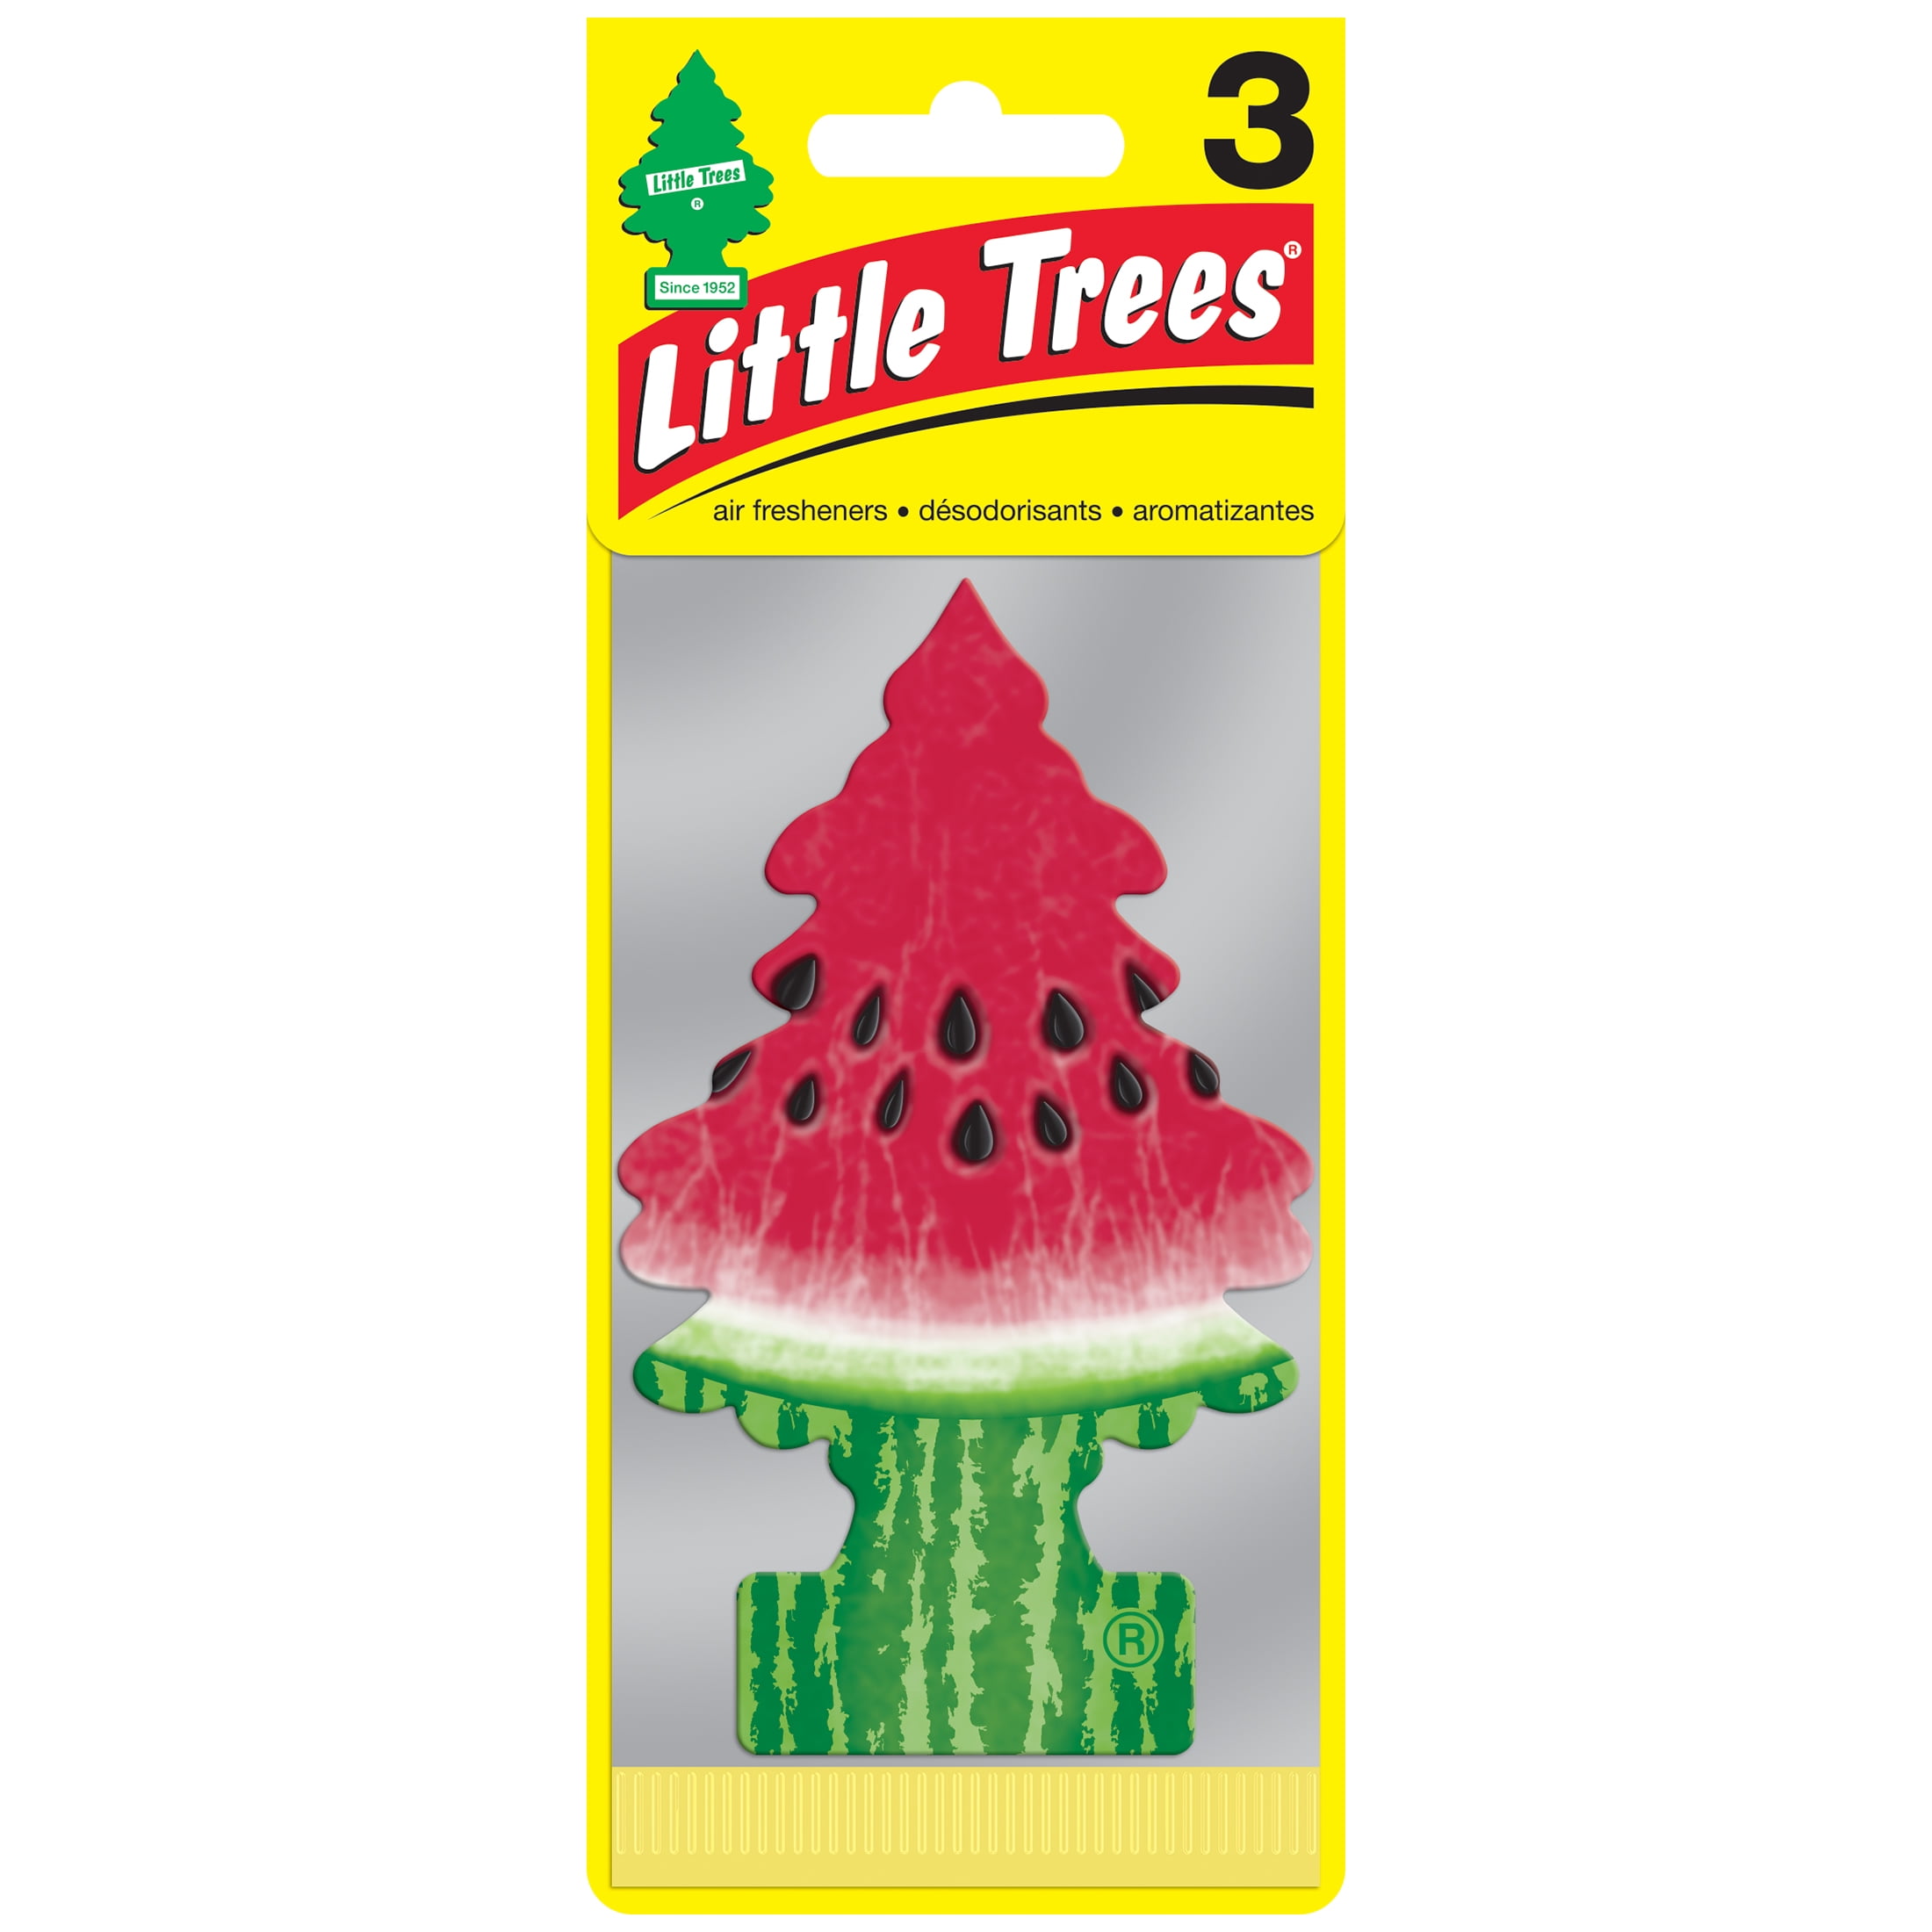 Little Trees Air Freshener Watermelon Fragrance 3-Pack